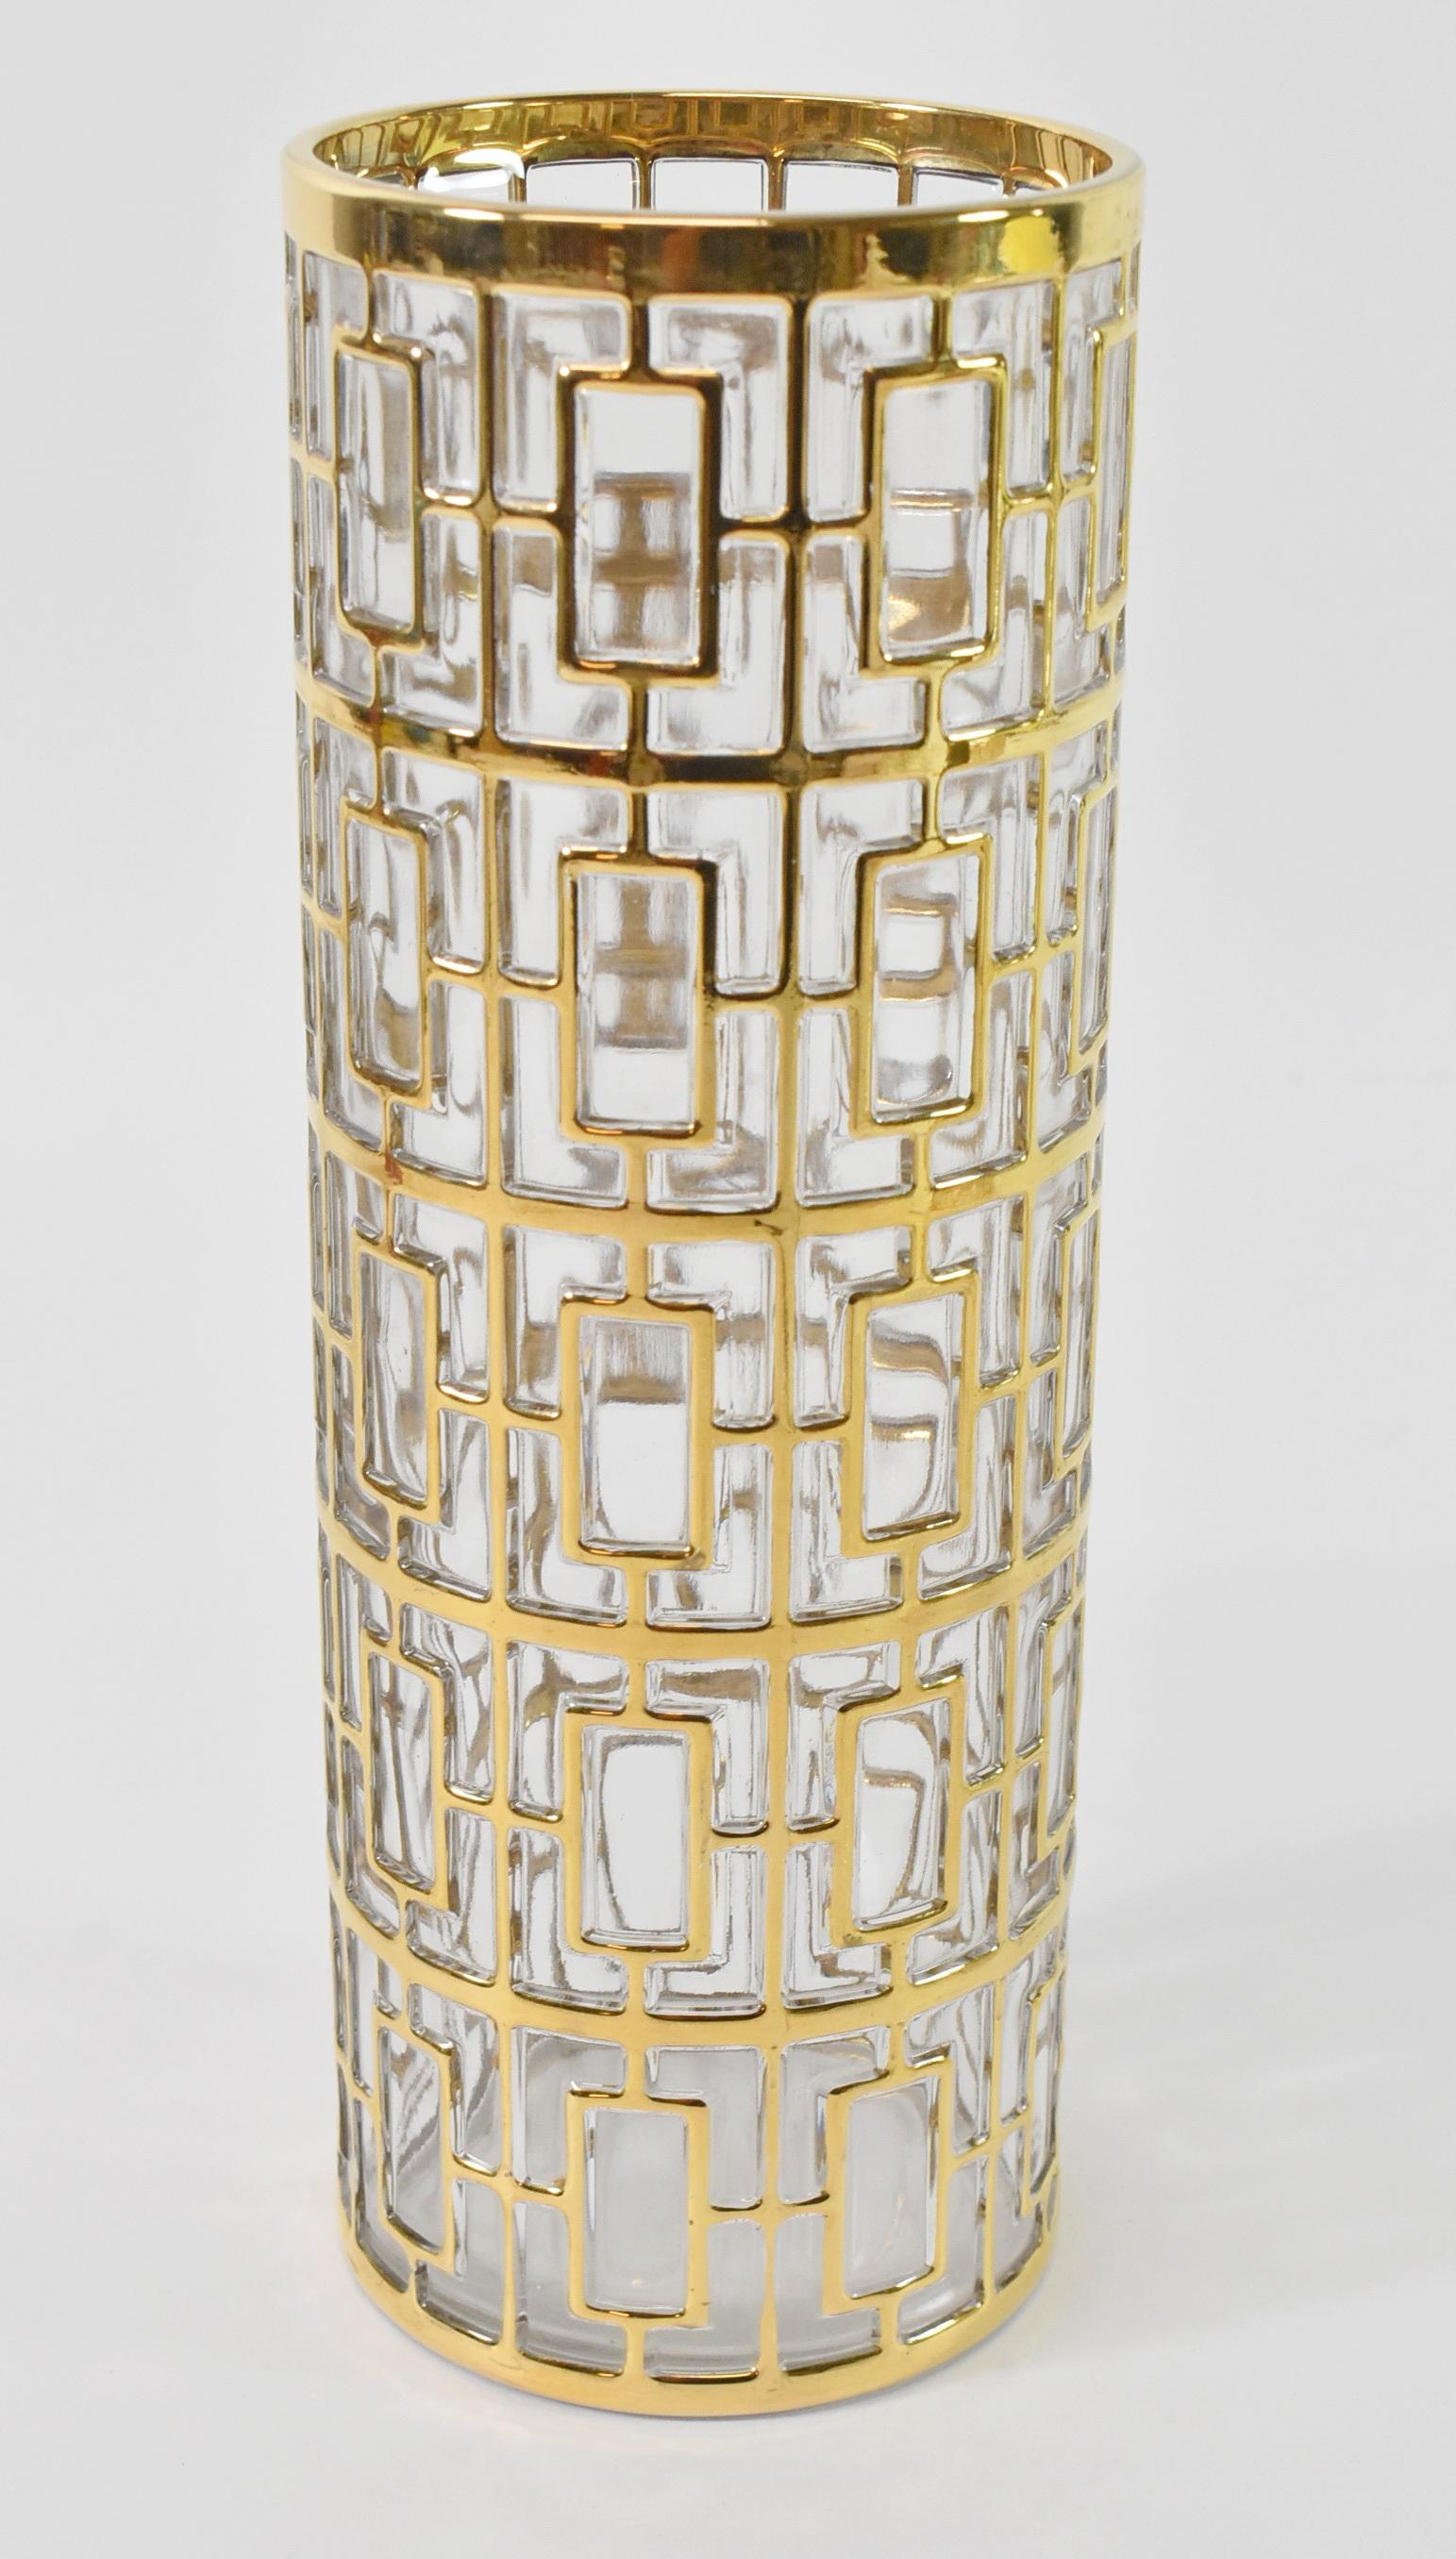 Vase shoji en verre impérial recouvert d'or 22K, cocktail mixer barware. Elegant mixer vintage Imperial Glass avec l'emblématique et collectionné recouvrement d'or 22K sur le verre appelé Shoji ou Greek Key. Cette pièce date des années 60 et porte